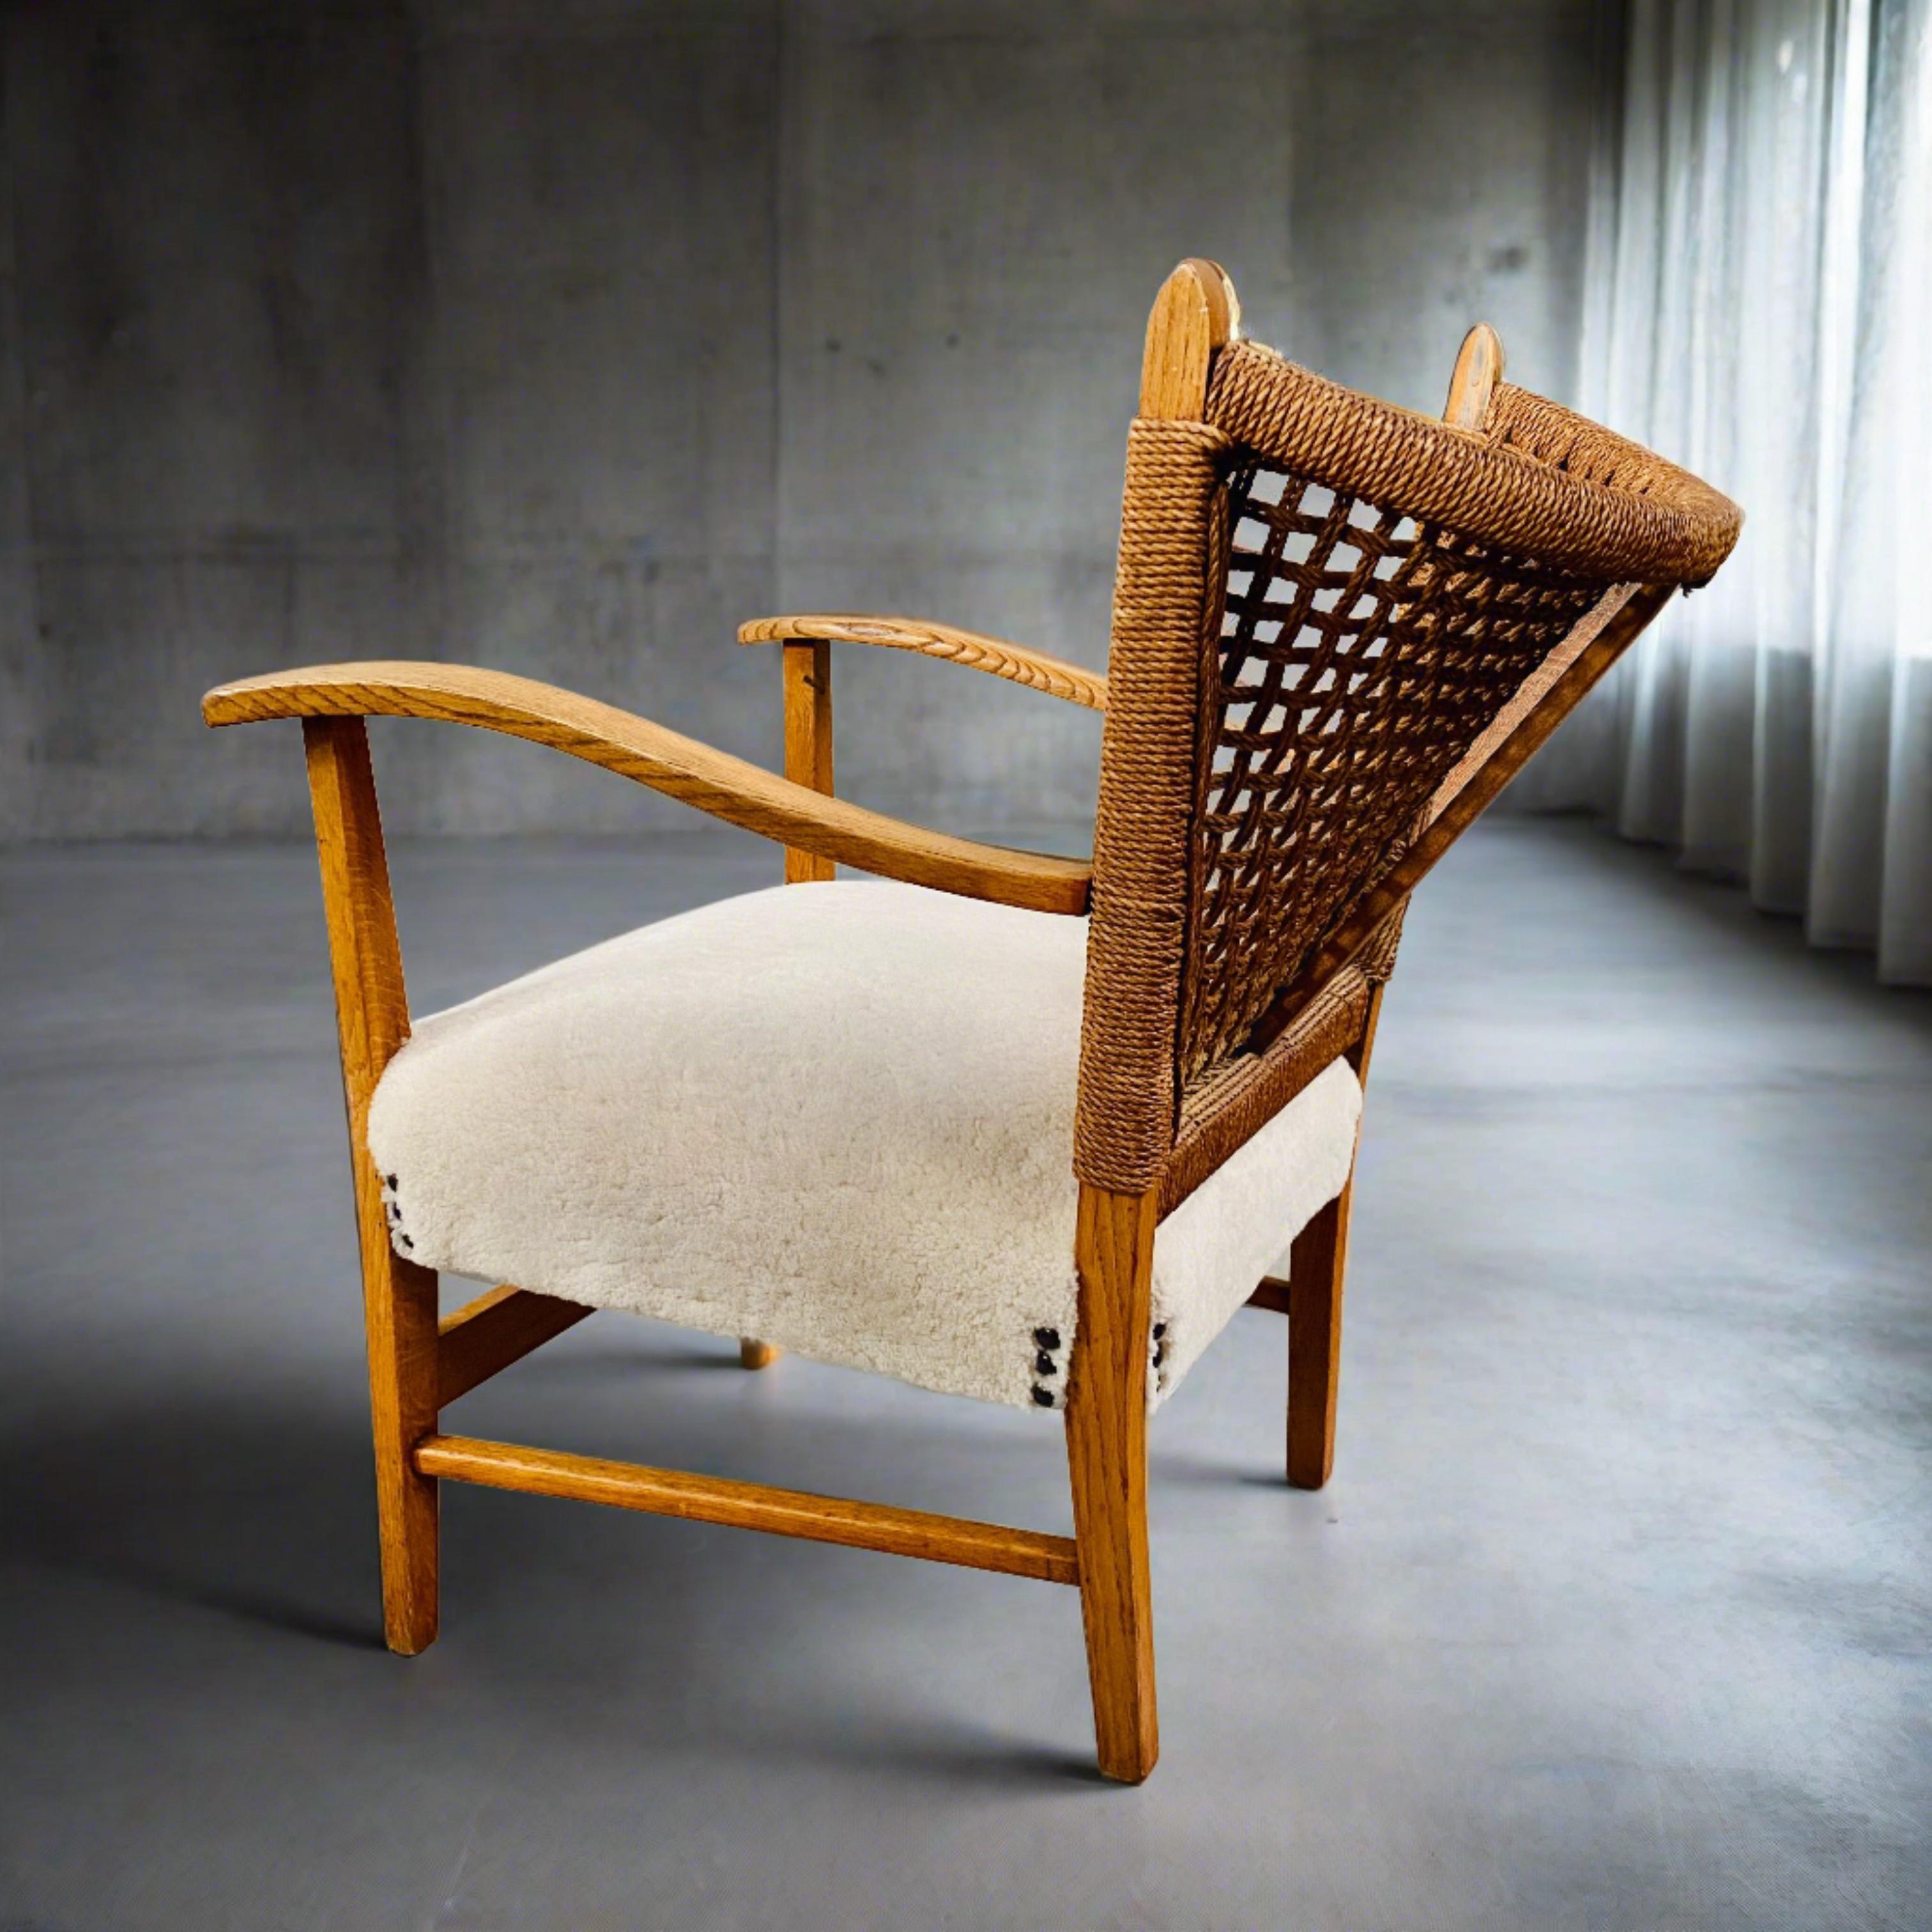 Rustic Rope, Oak and Sheepskin Arm Chair by Bas Van Pelt, Netherlands 1940